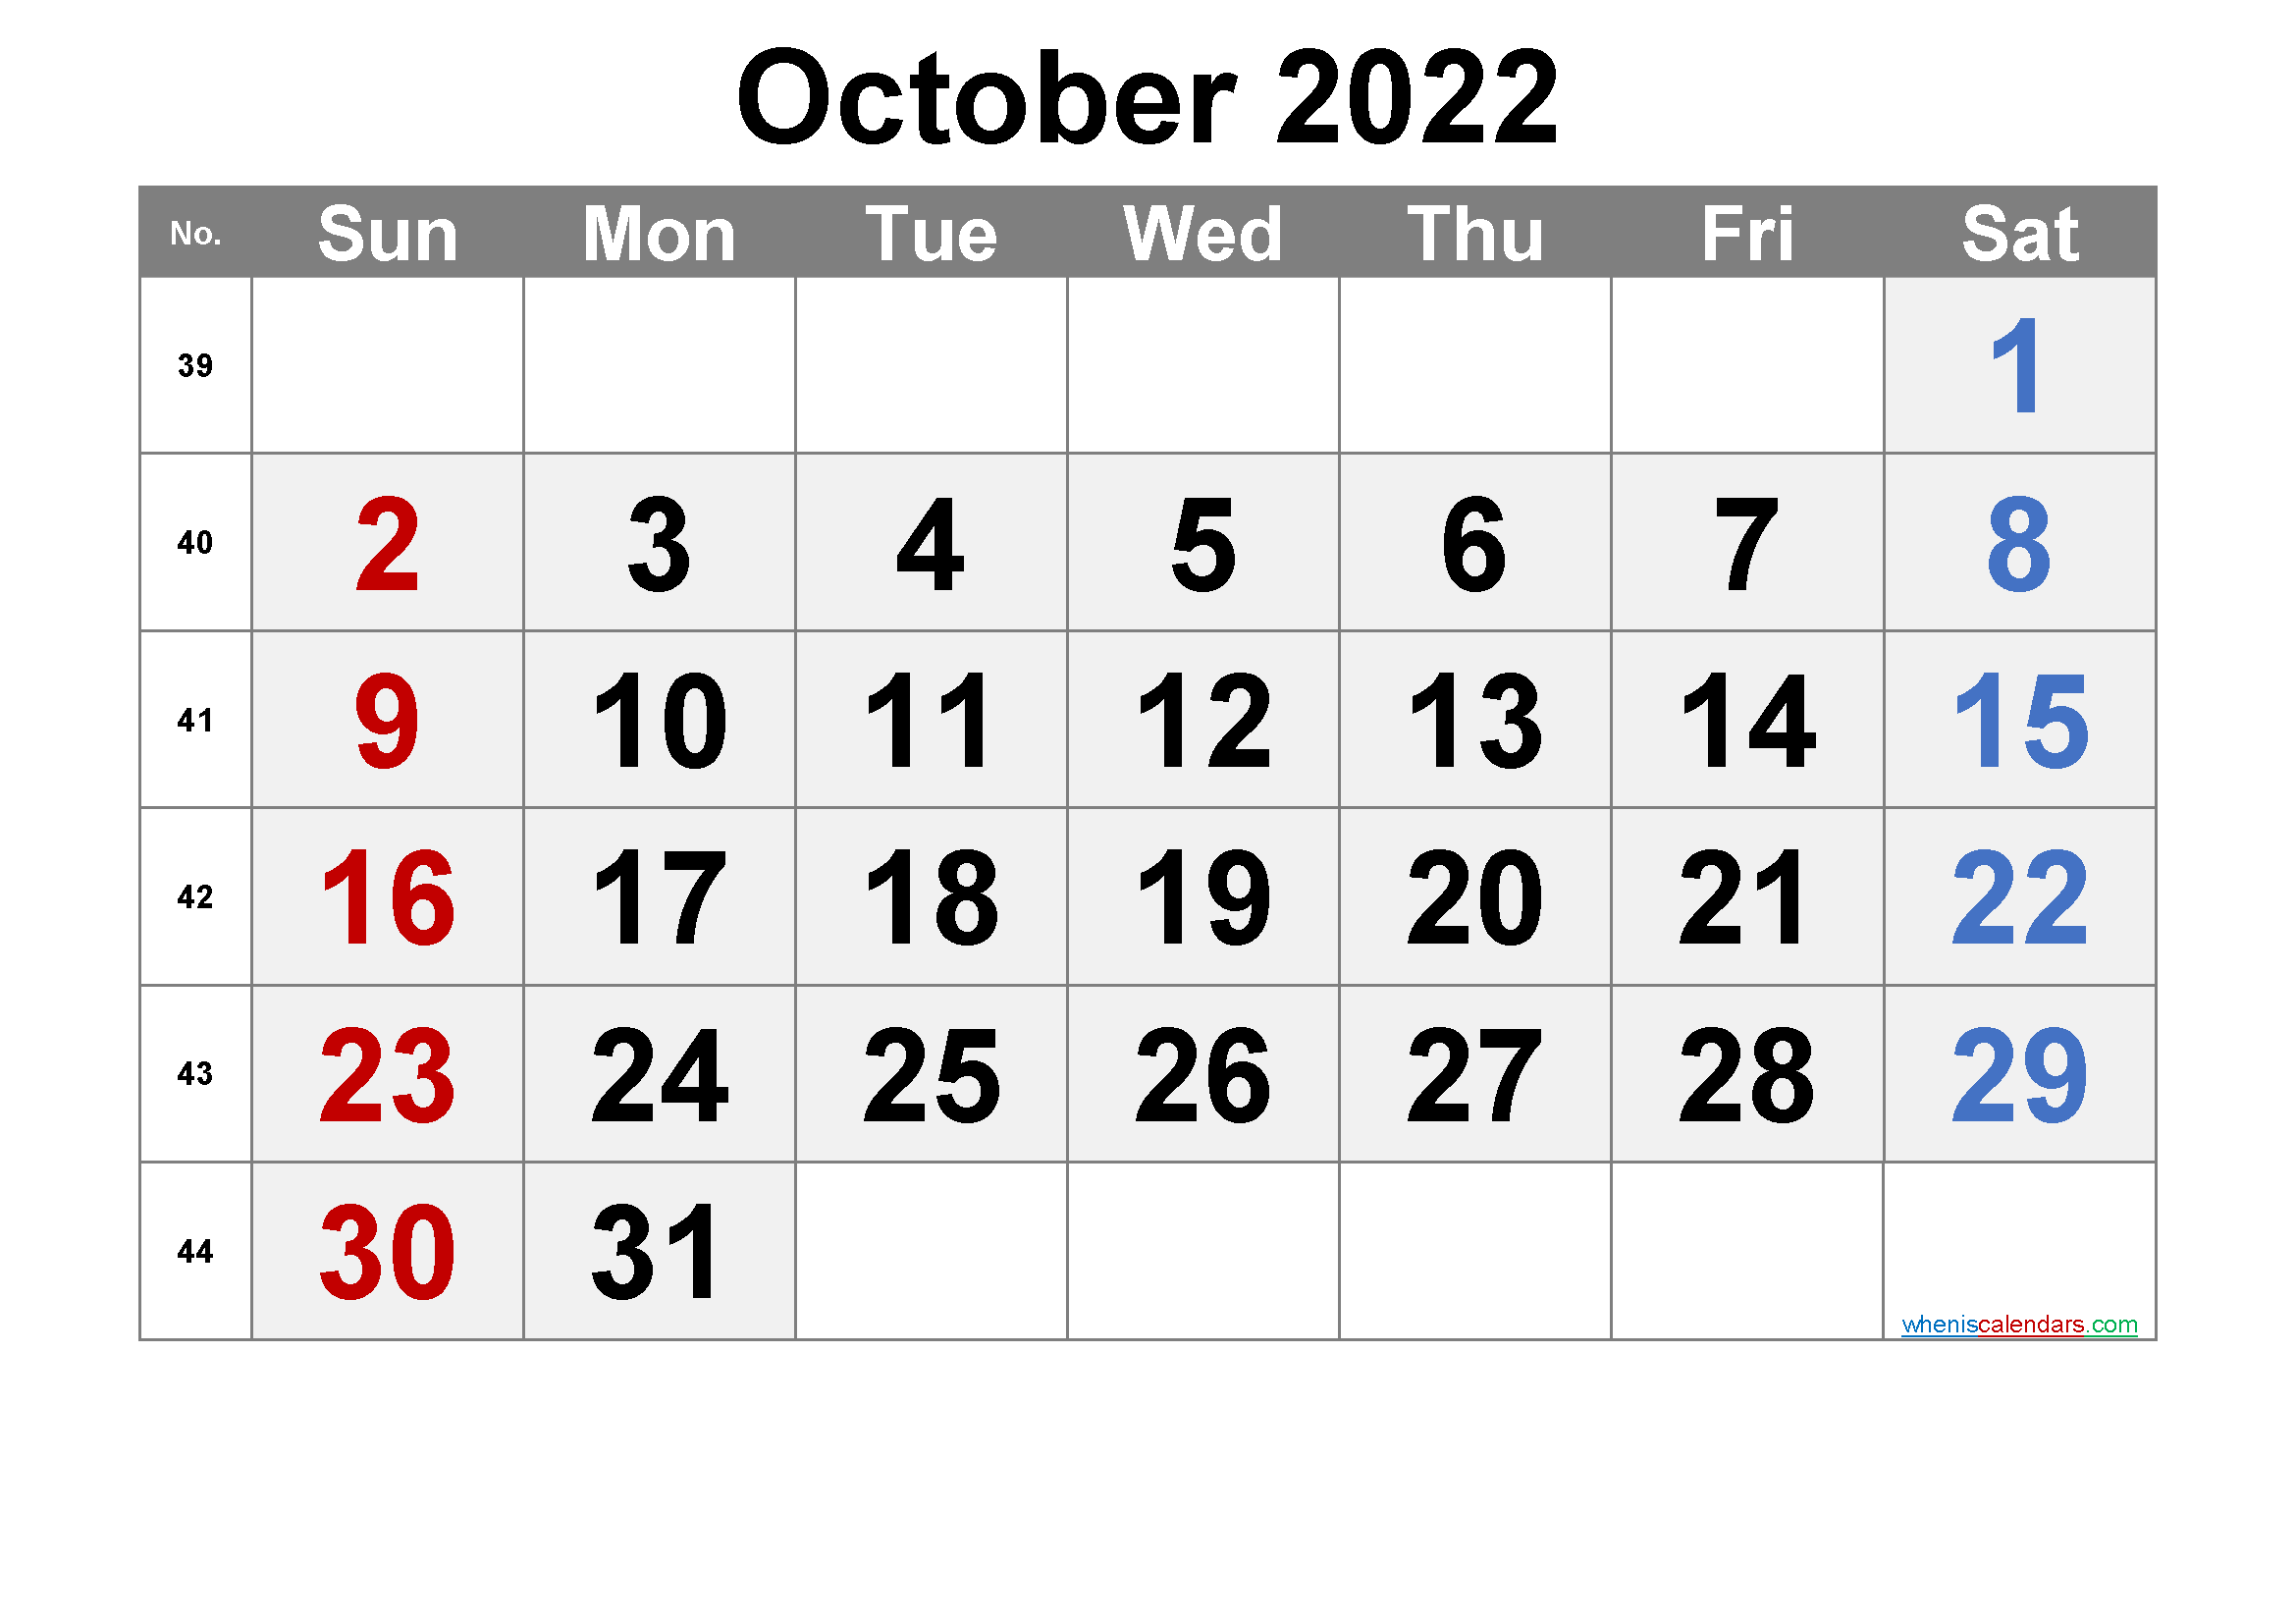 Free Printable October Calendar 2022 Free Printable Calendar October 2022 With Week Numbers